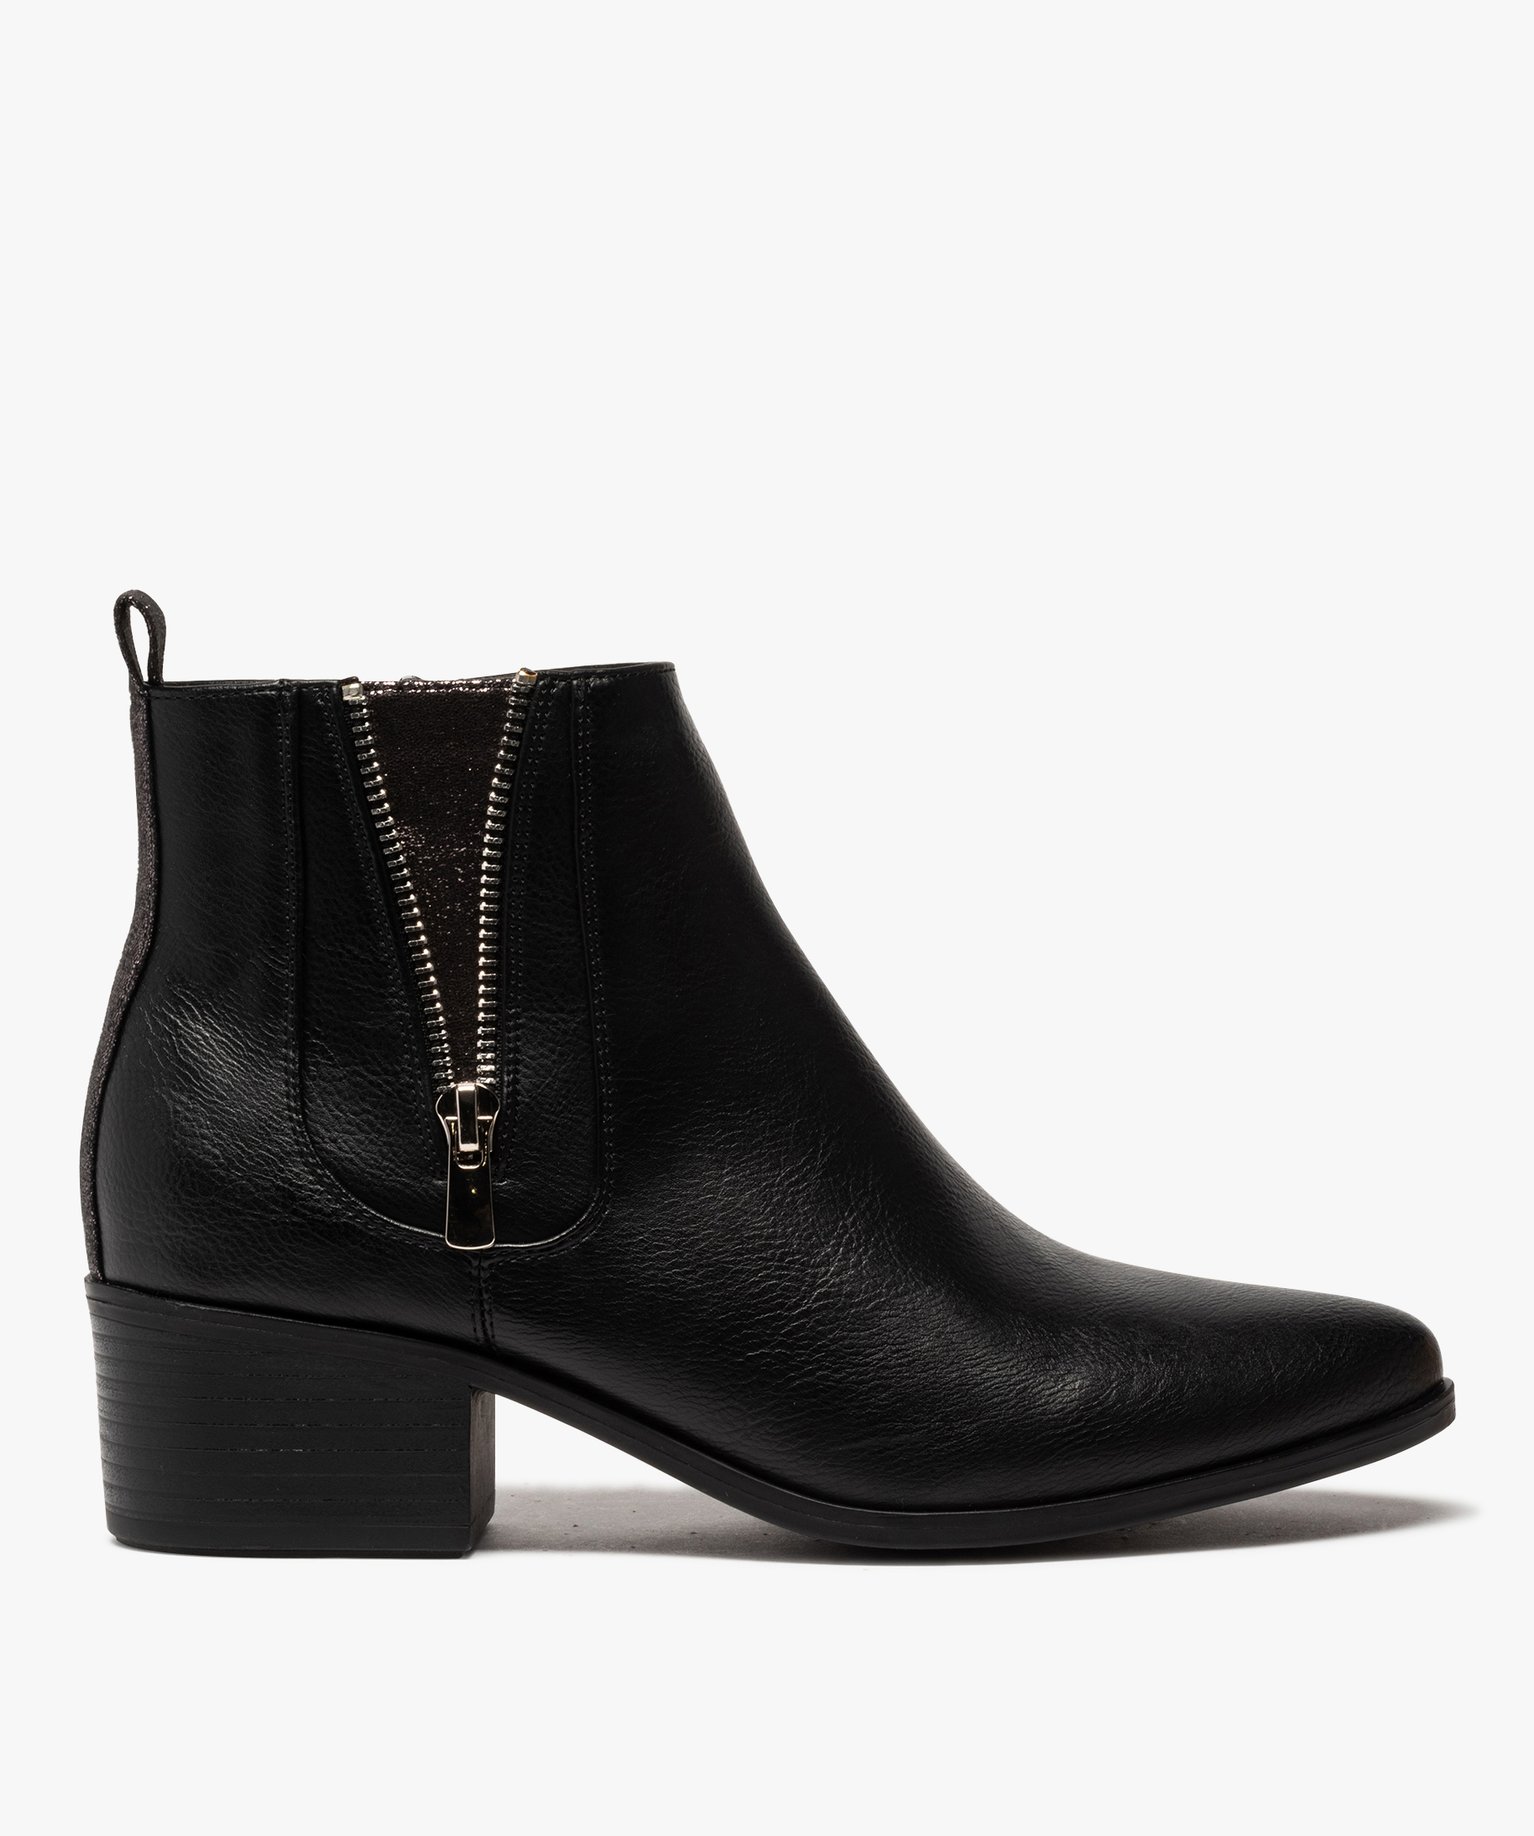 boots femme a talon large avec zip decoratif noir